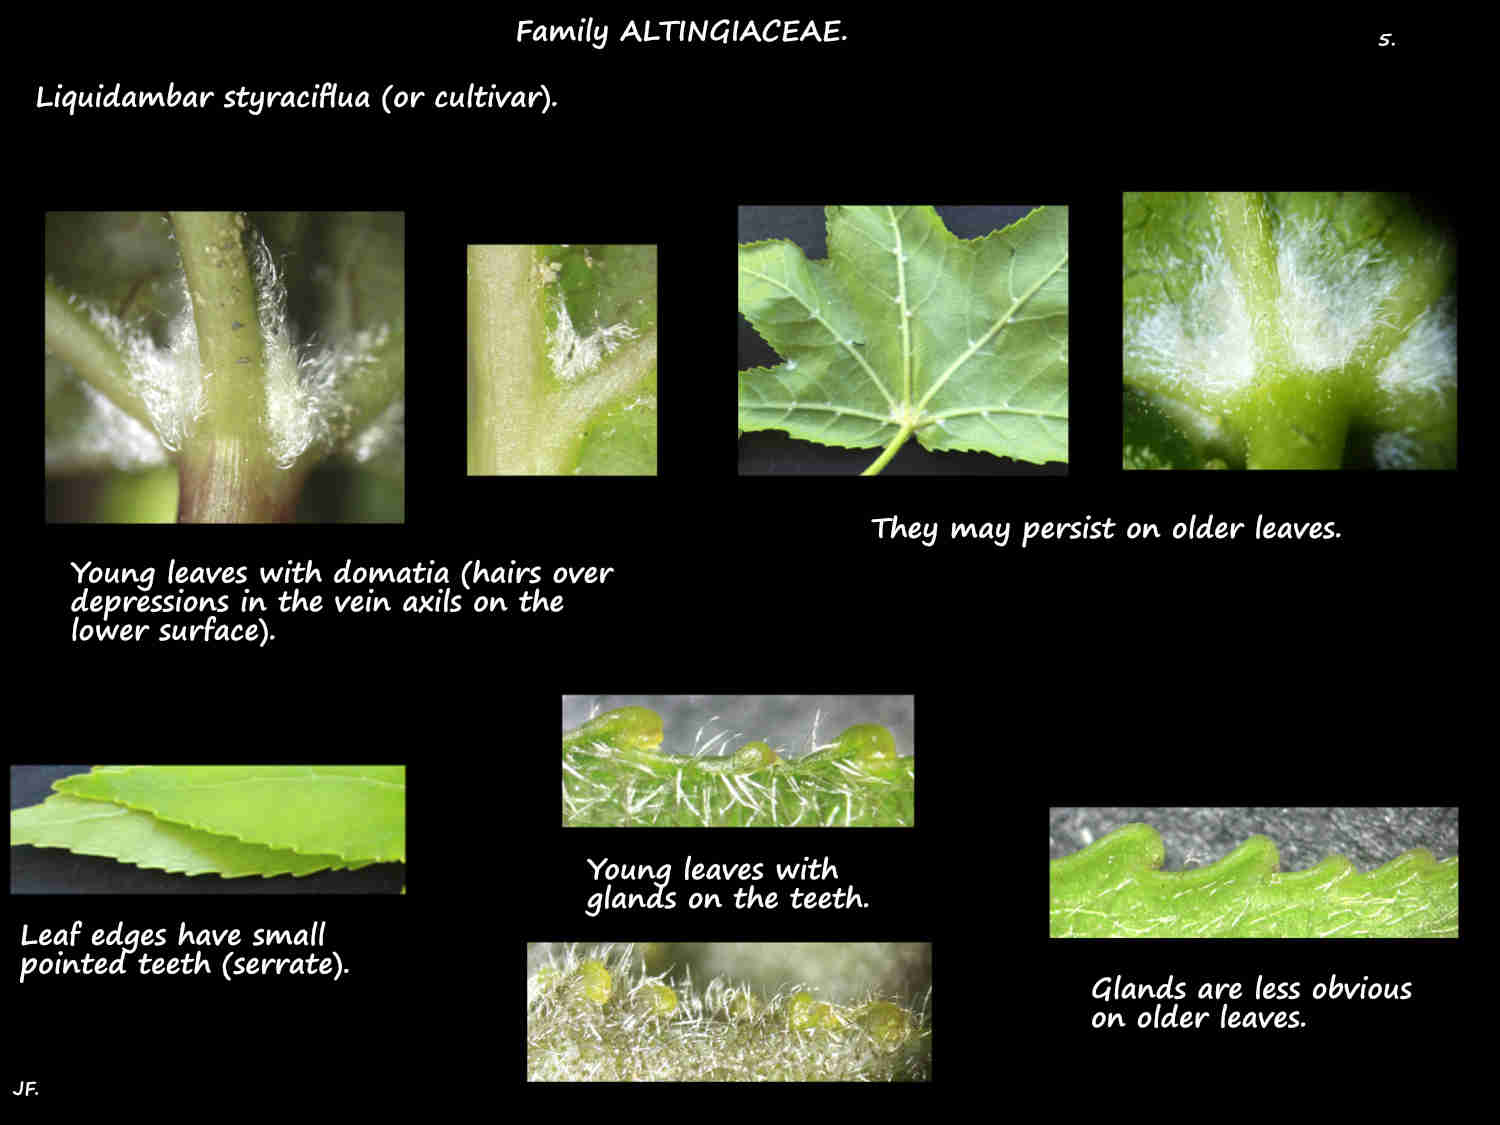 5 Domatia & teerh on Sweetgum leaves